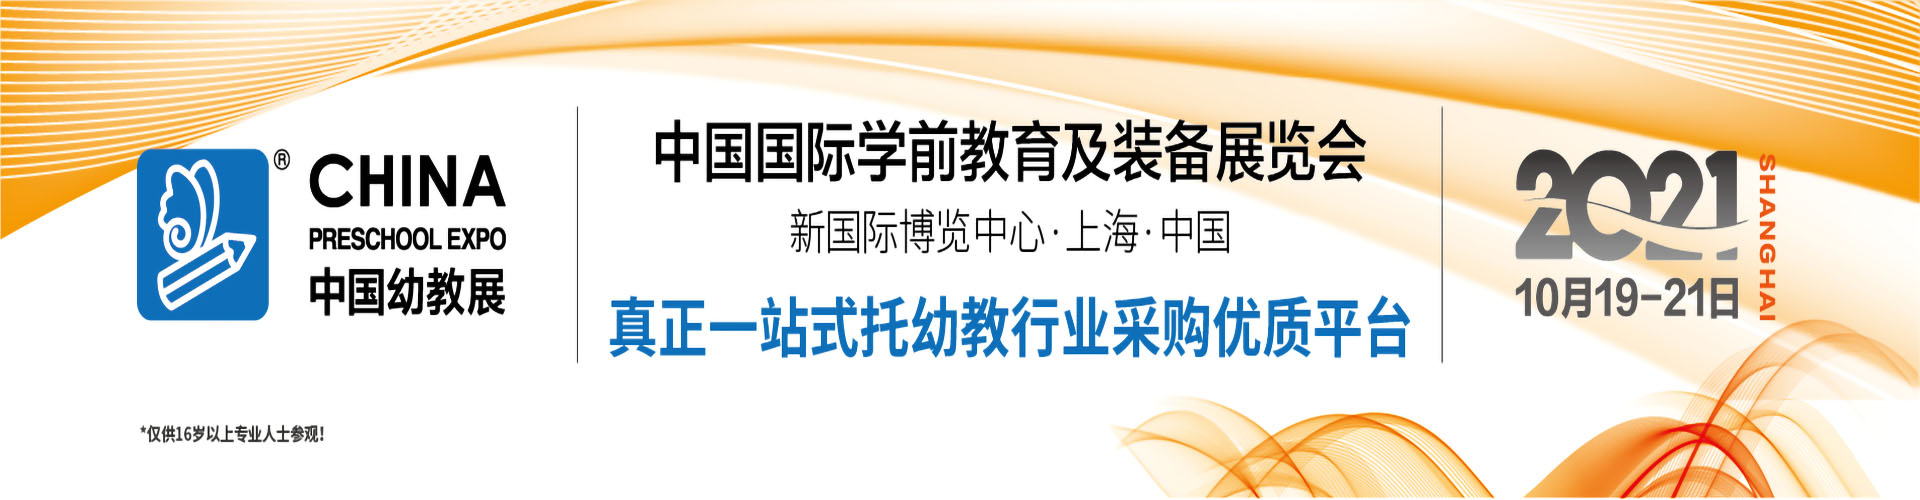 2021上海幼教展CPE游乐设备博览会